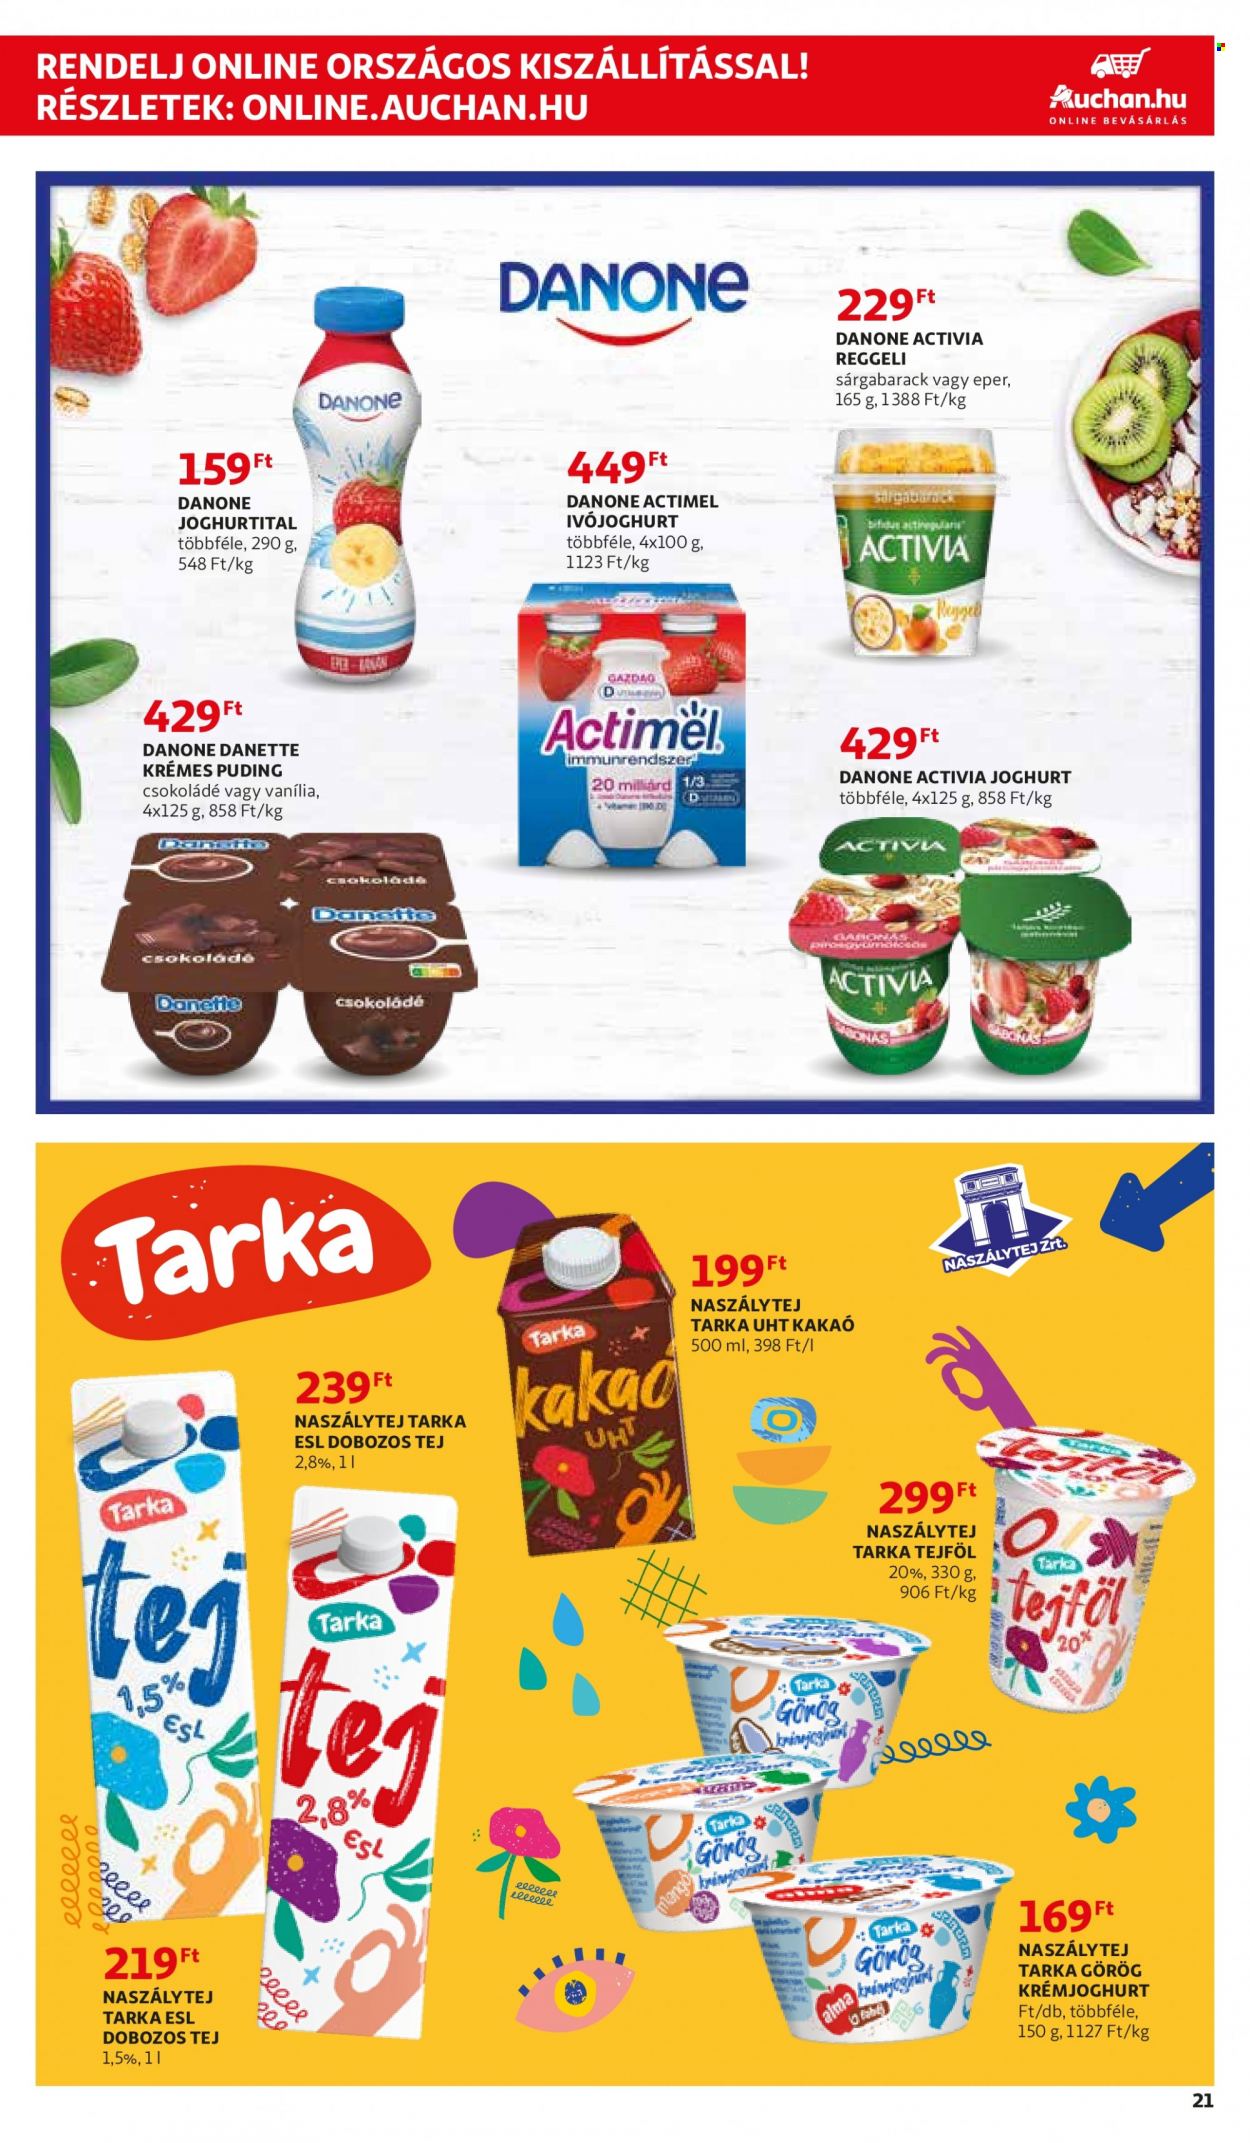 thumbnail - Auchan akciós újsága  - 2022.01.06 - 2022.01.19 - Akciós termékek - sárgabarack, Danette, Danone, puding, Activia, joghurt, krémjoghurt, tej, ivójoghurt, Actimel, tejföl.  21. Oldal